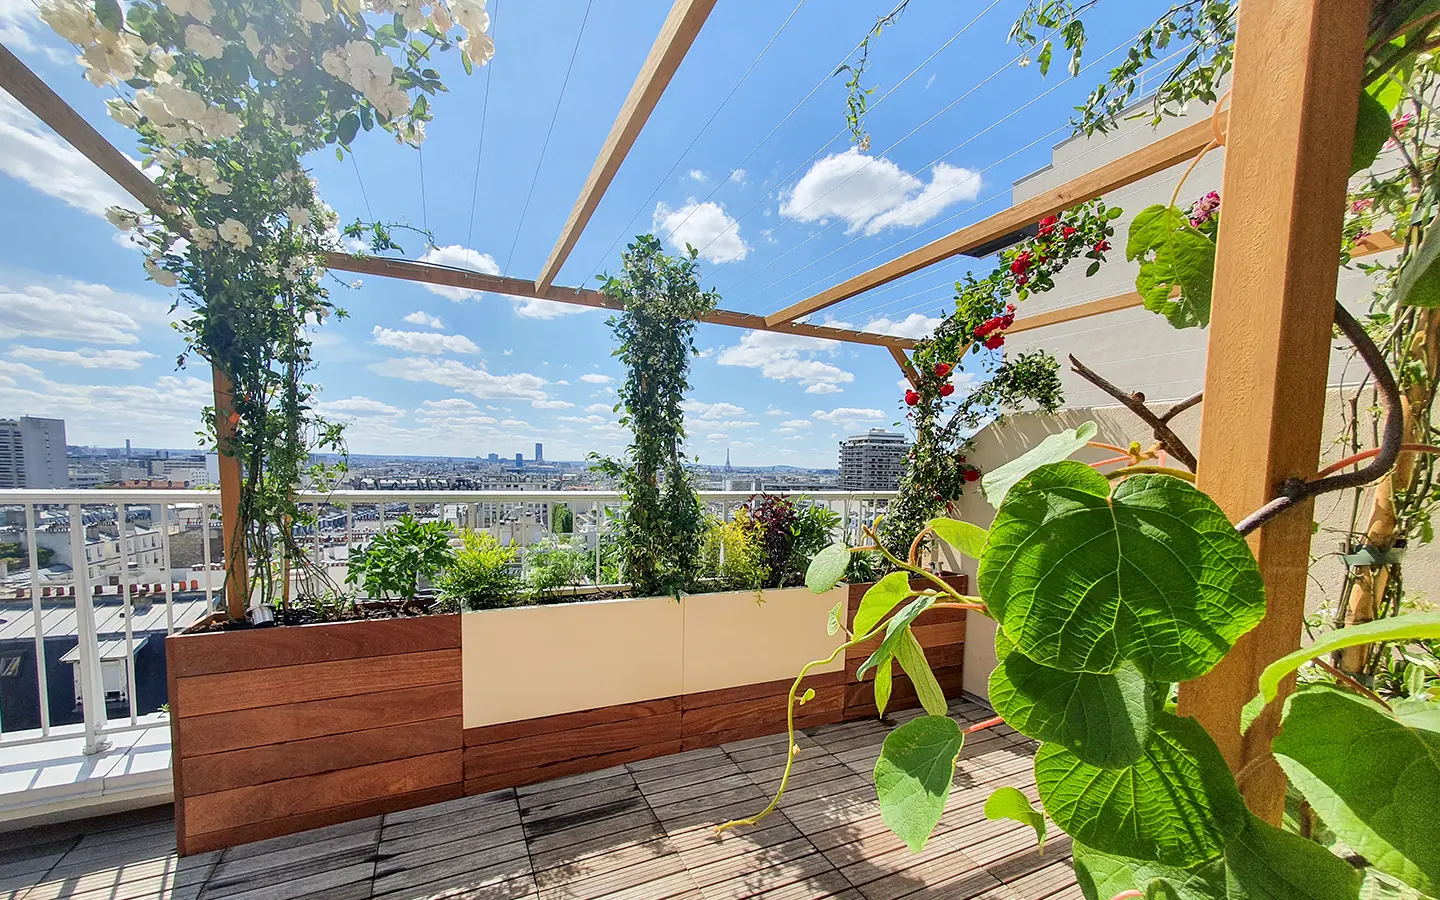 Il s’agit ici d’une terrasse végétalisée dans le 11ème arrondissement de Paris qui mêle le bois et le métal pour mettre en valeur de nombreuses essences végétales